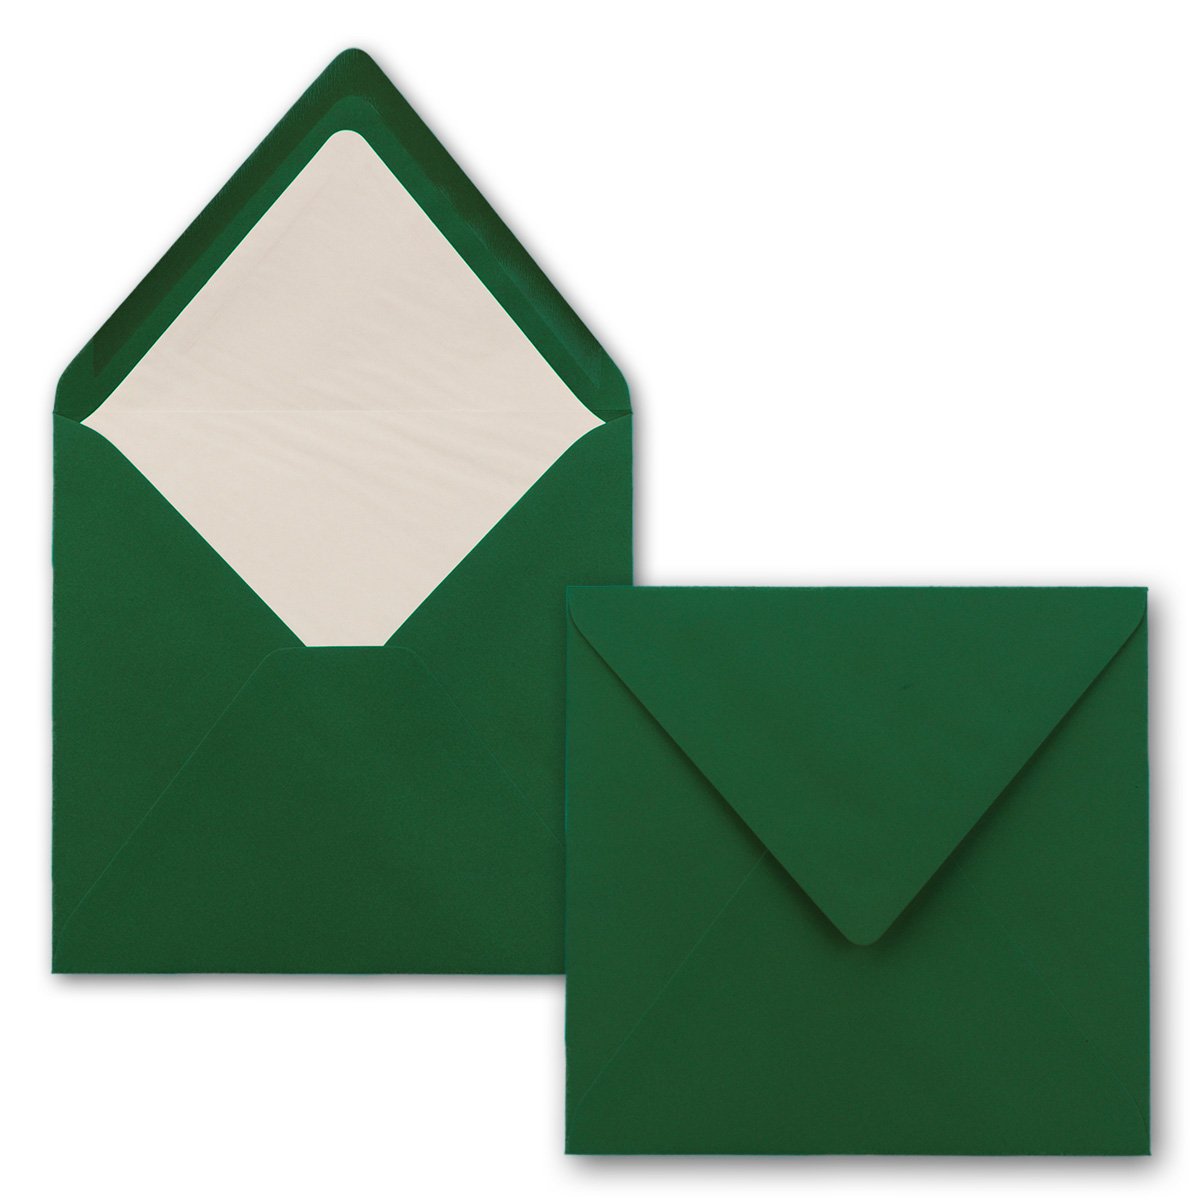 100x Briefumschläge Quadratisch 16 x 16 cm in Dunkelgrün (Grün)- Umschläge mit weißem Seidenfutter - Kuverts ohne Fenster & mit Nassklebung - Für Einladungskarten zu Hochzeit und Geburtstag